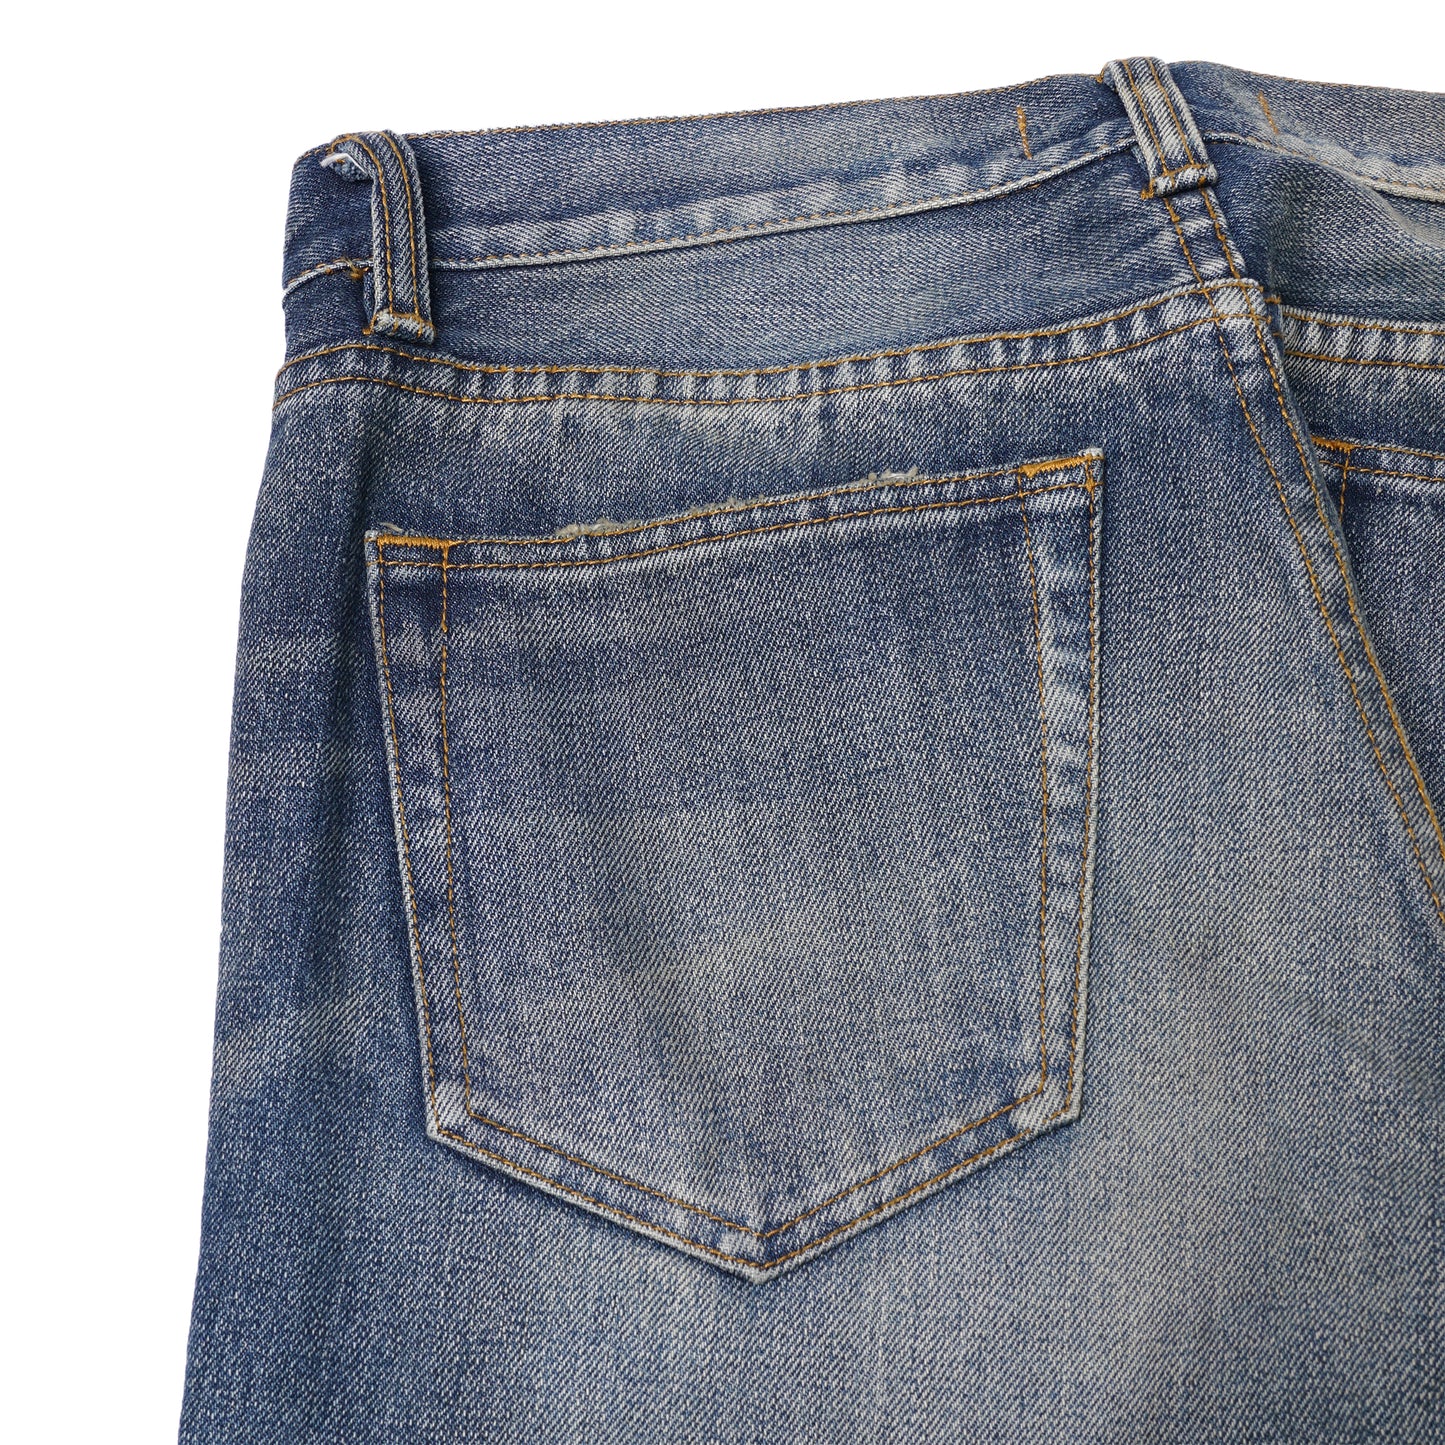 【訂製】R84 Vintage Washed 14oz. Slim Cut Jeans